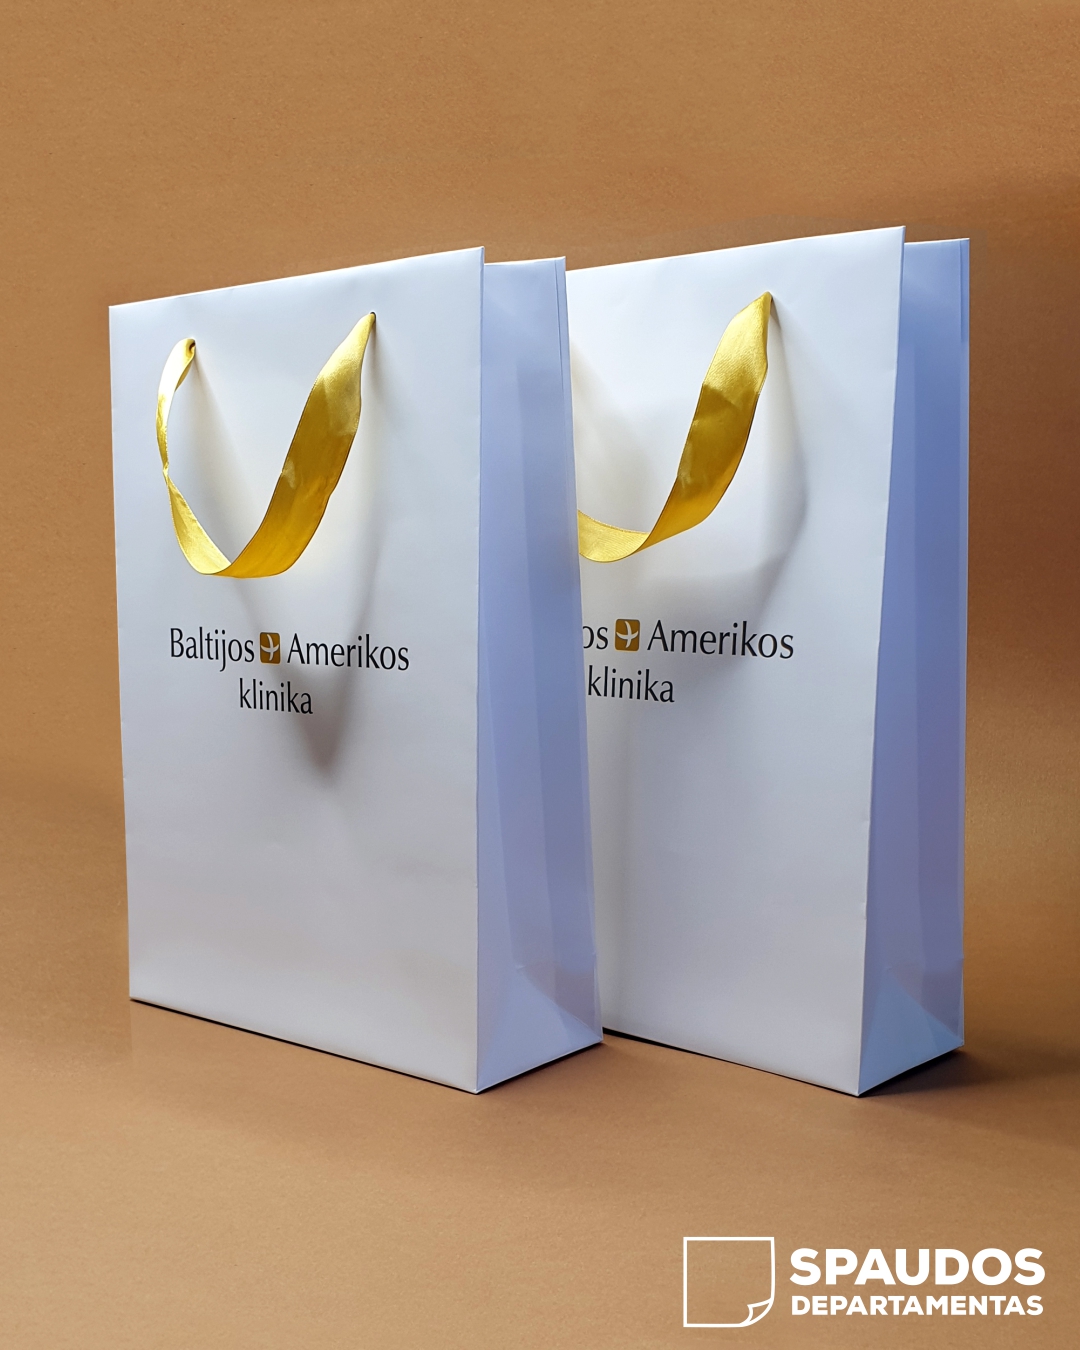 Baltijos Amerikos klinika popieriniai maišeliai